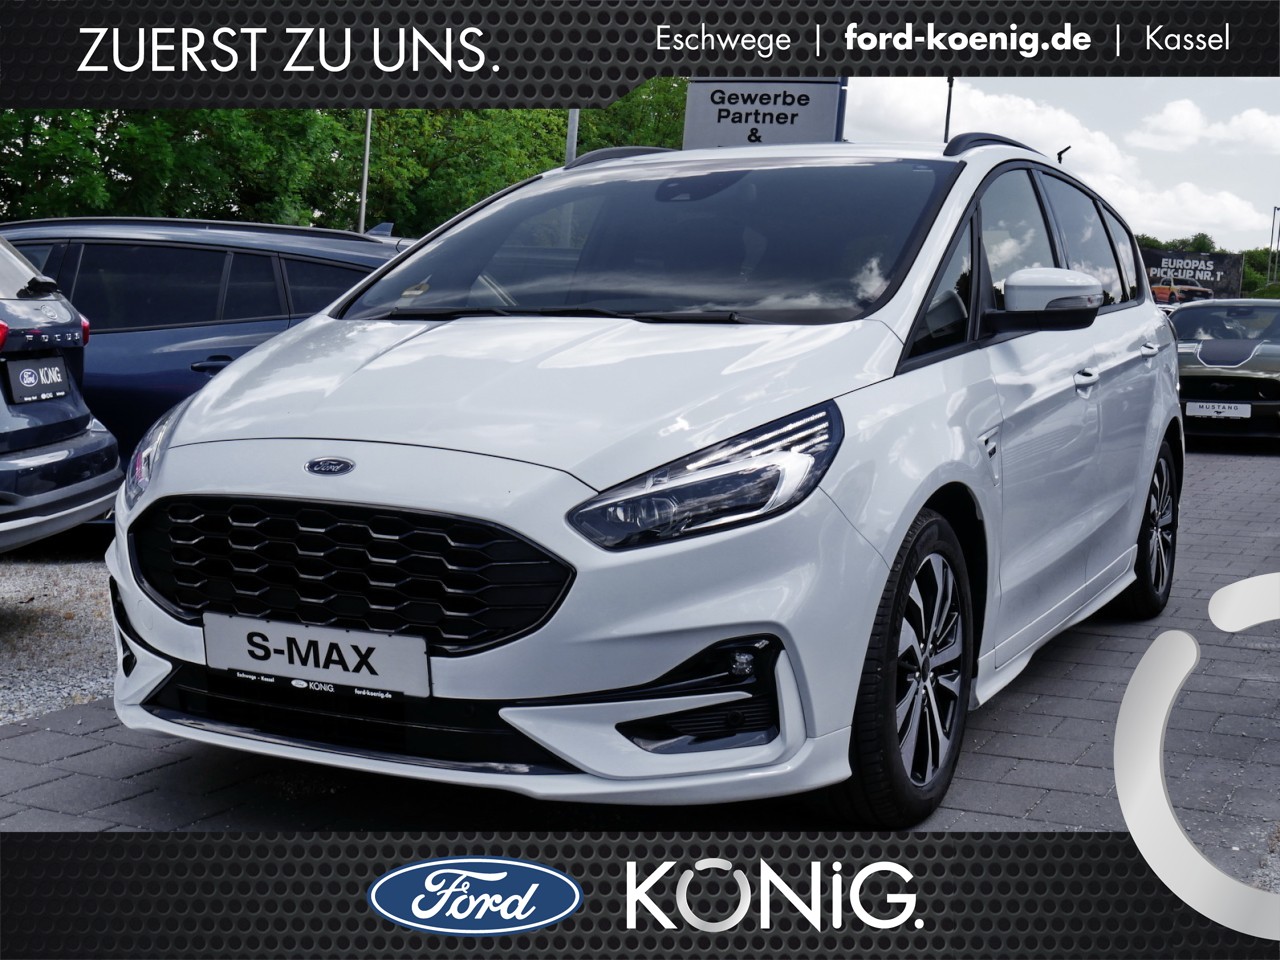 ᐅ Ford S-Max gebraucht in Eschwege, Kassel und Göttingen